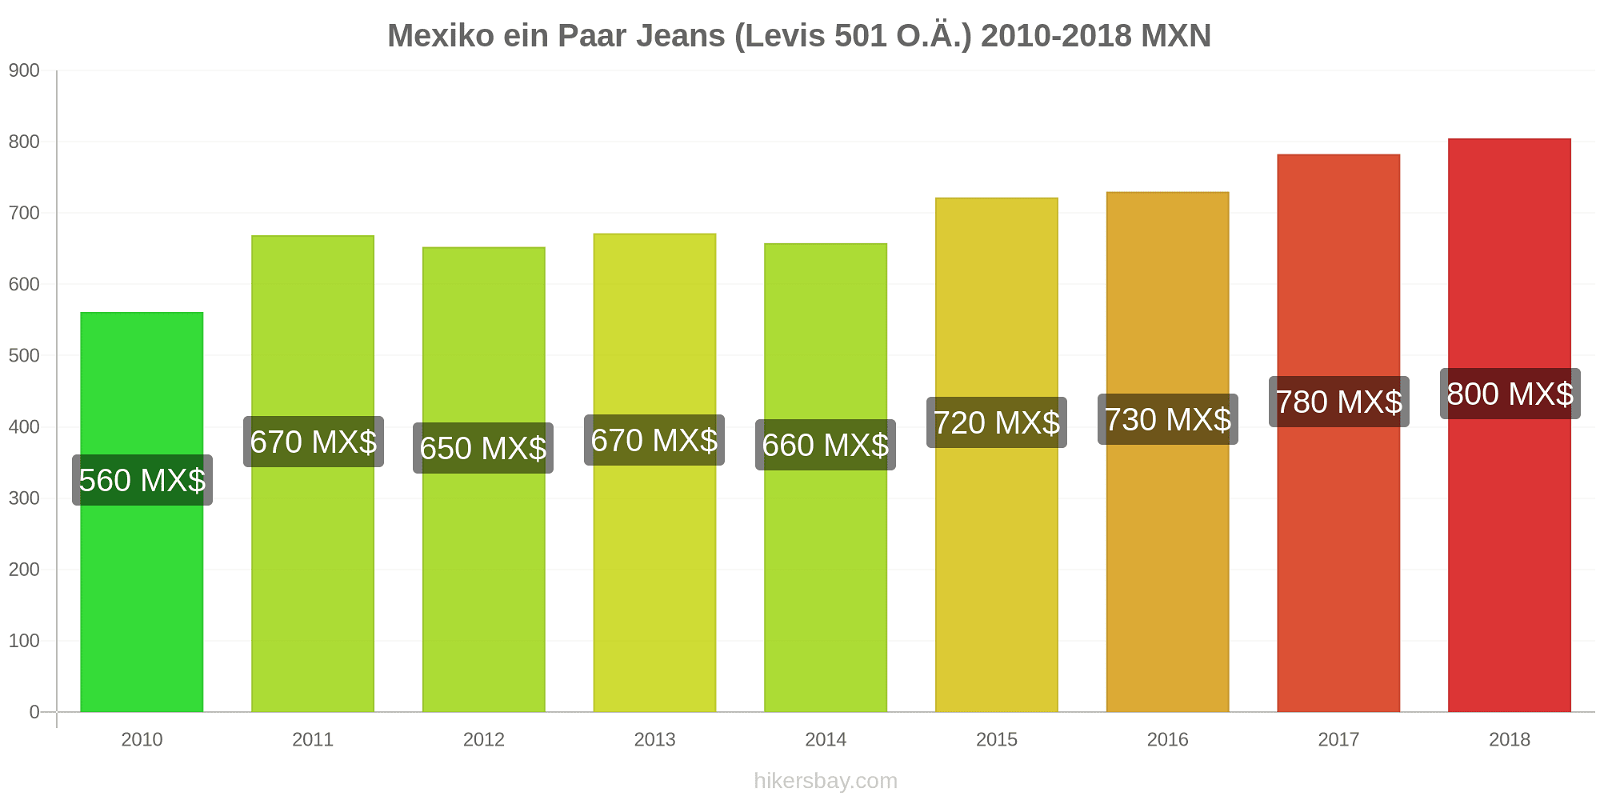 Mexiko Preisänderungen 1 Paar Jeans (Levis 501 oder ähnlich) hikersbay.com